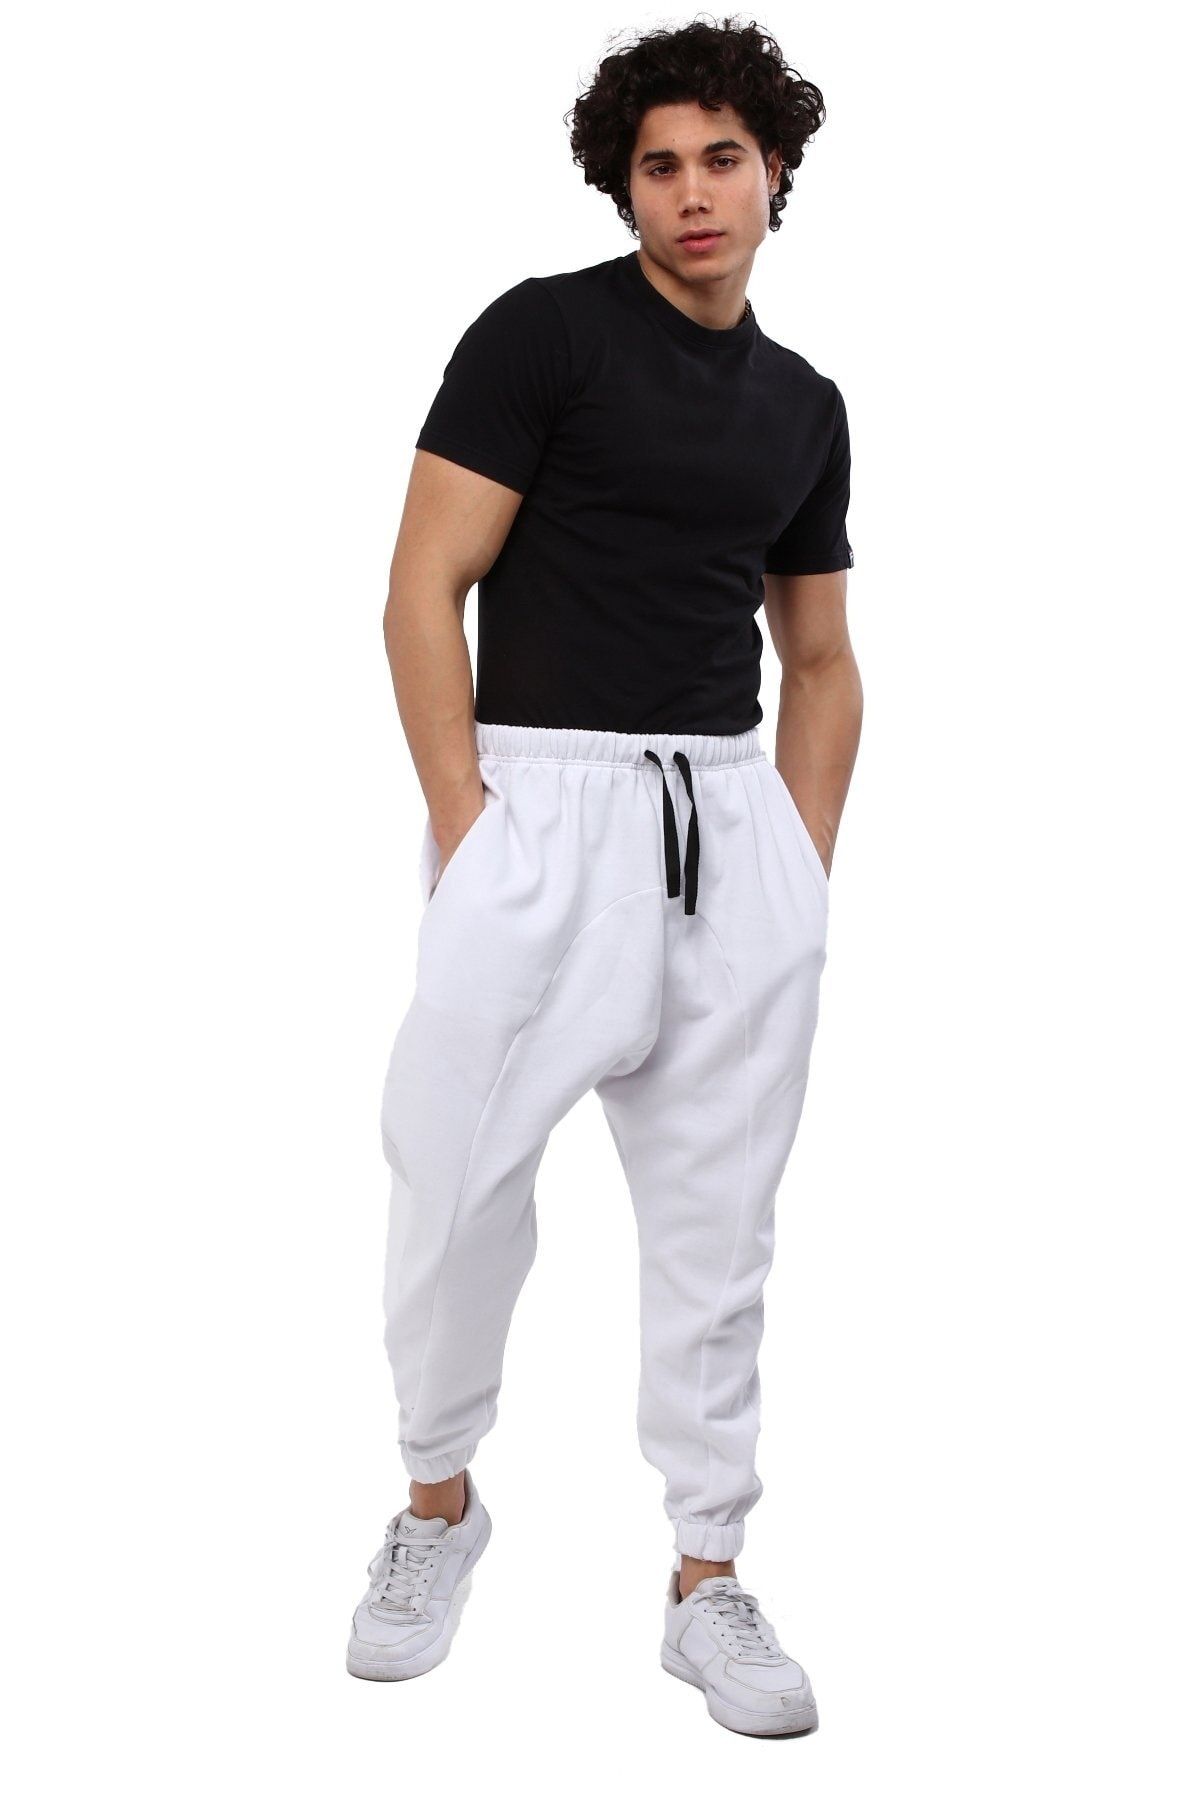 AUST GİYİM Aust Erkek Giyim Şalvar Tipi Eşofman Altı - Bol Kesim Rahat Şalvar Eşofman Altı - Beyaz